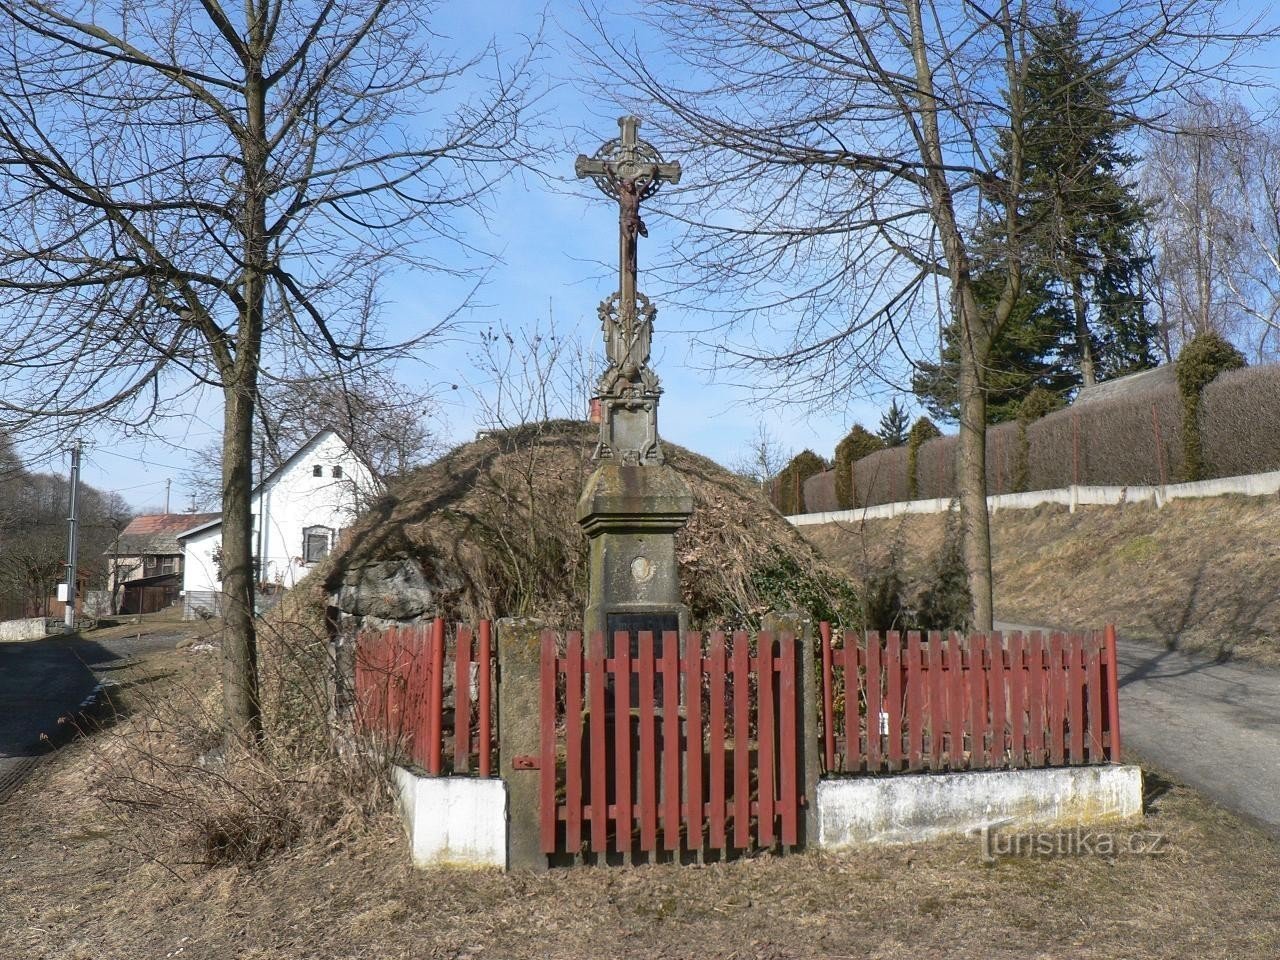 Velenovy, une croix dans le village